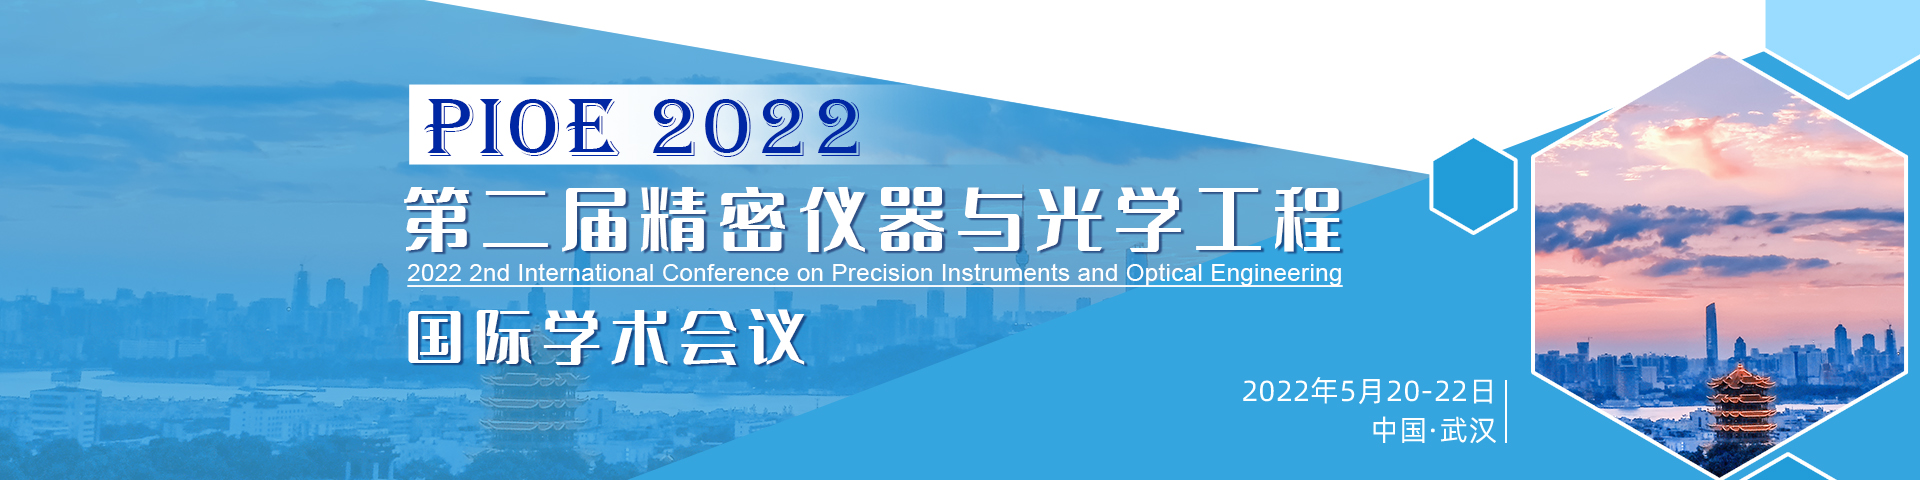 5月武汉-PIOE 2022-banner-陈军-20211222.jpg